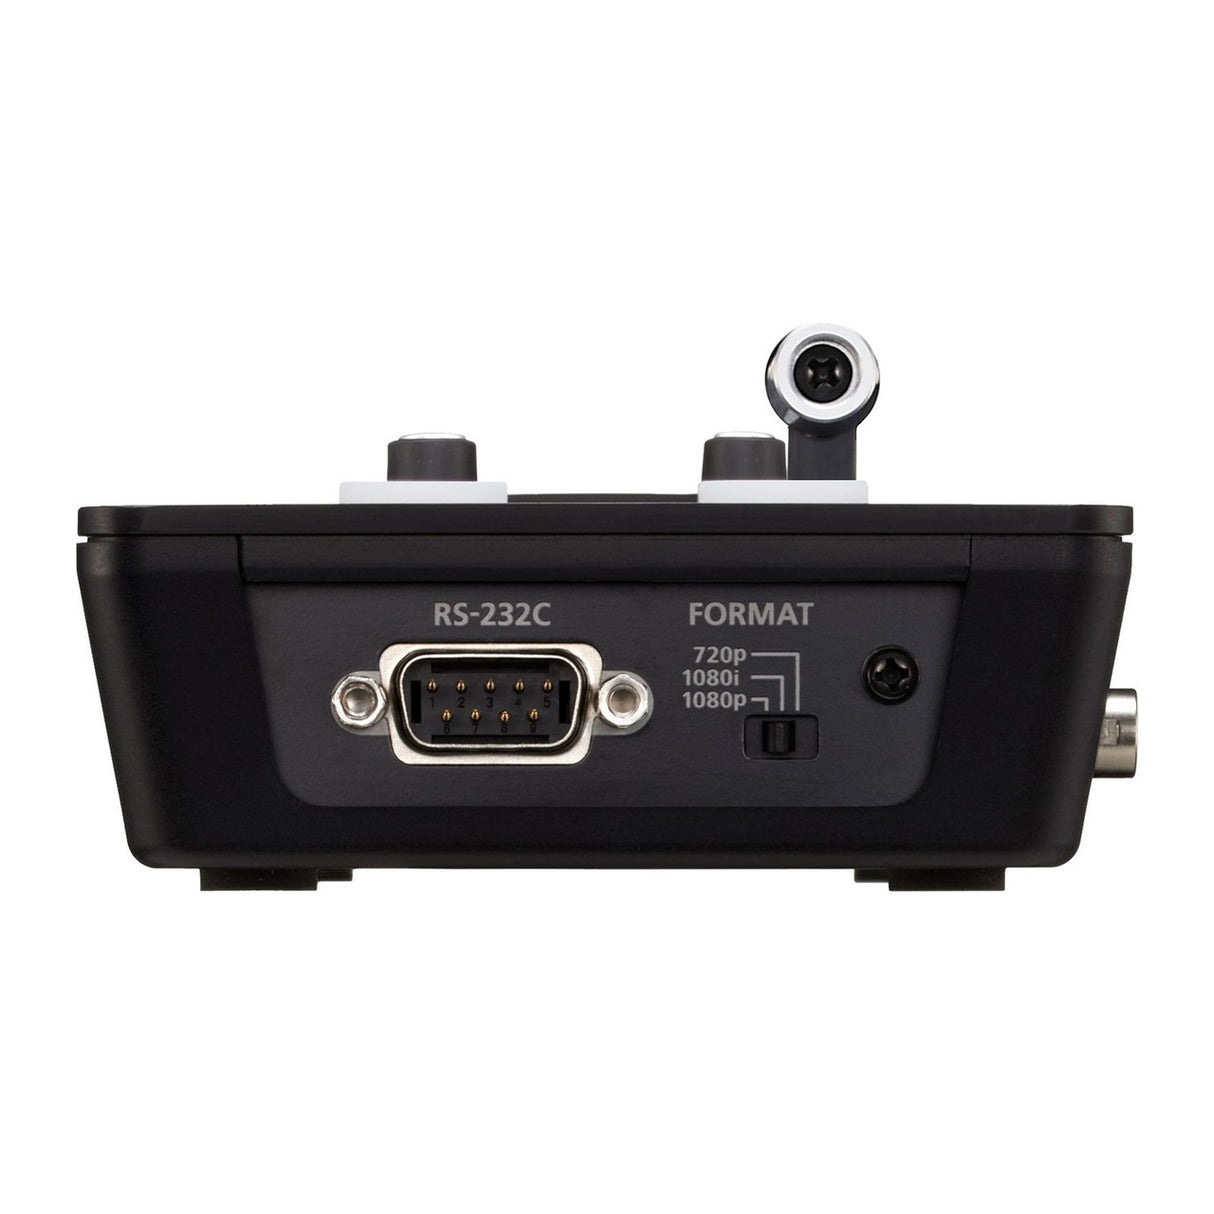 Roland V-1SDI 3G-SDI Video Switcher (Used)